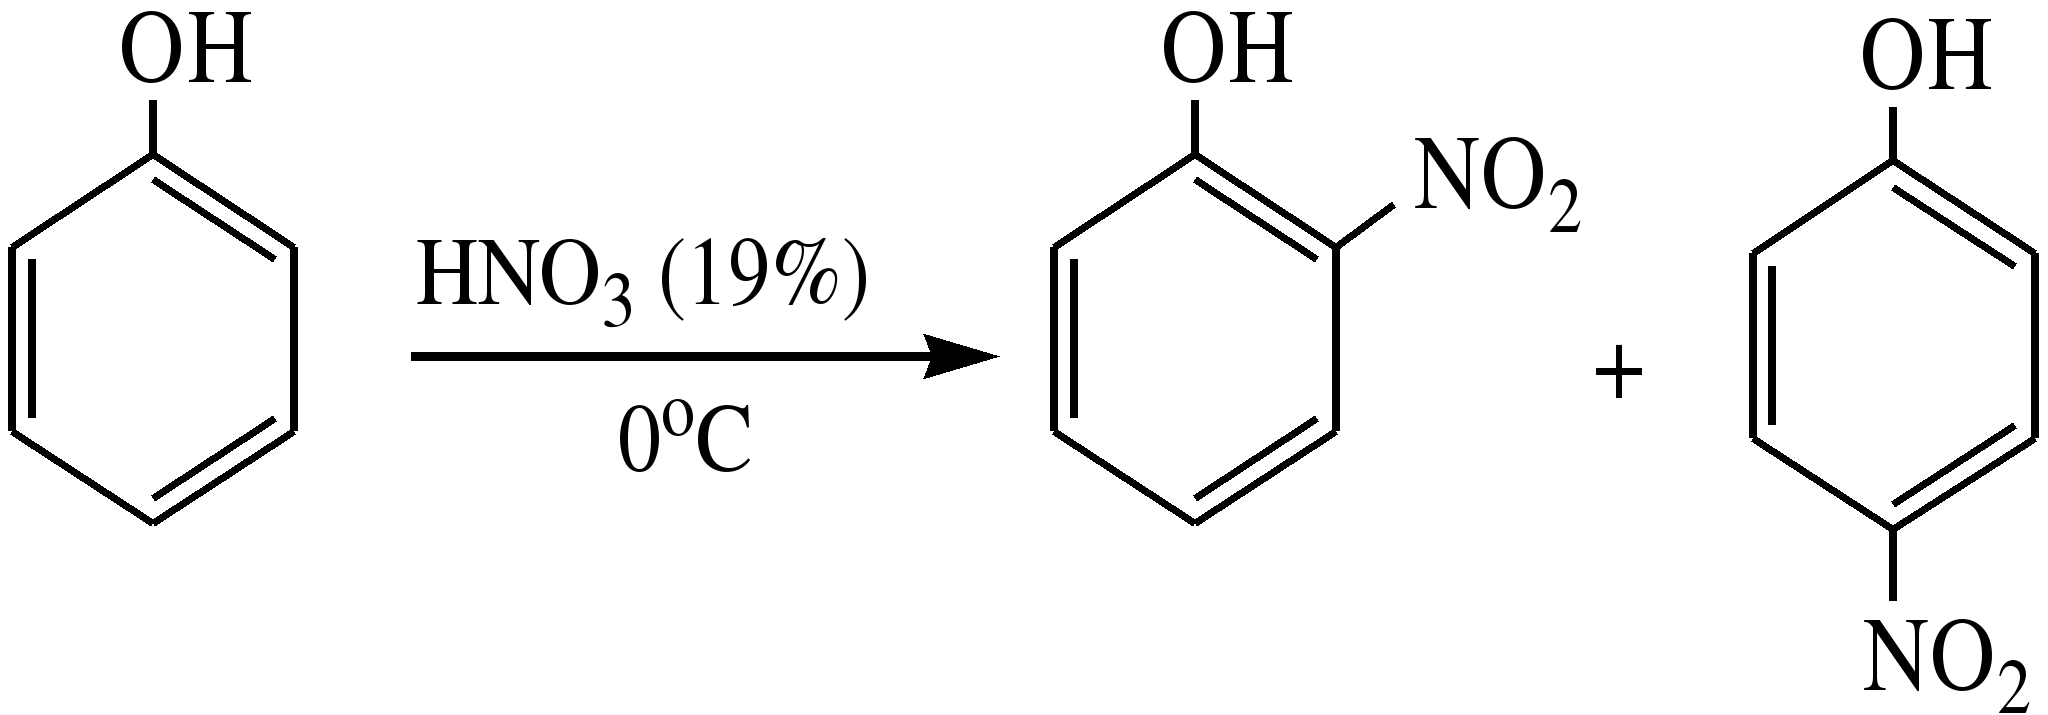 Нитрование фенола реакция. Нитрование фенола концентрированной азотной кислотой. 4 Нитрофенол и 2,4 динитрофенол. Реакция нитрирования фенола.